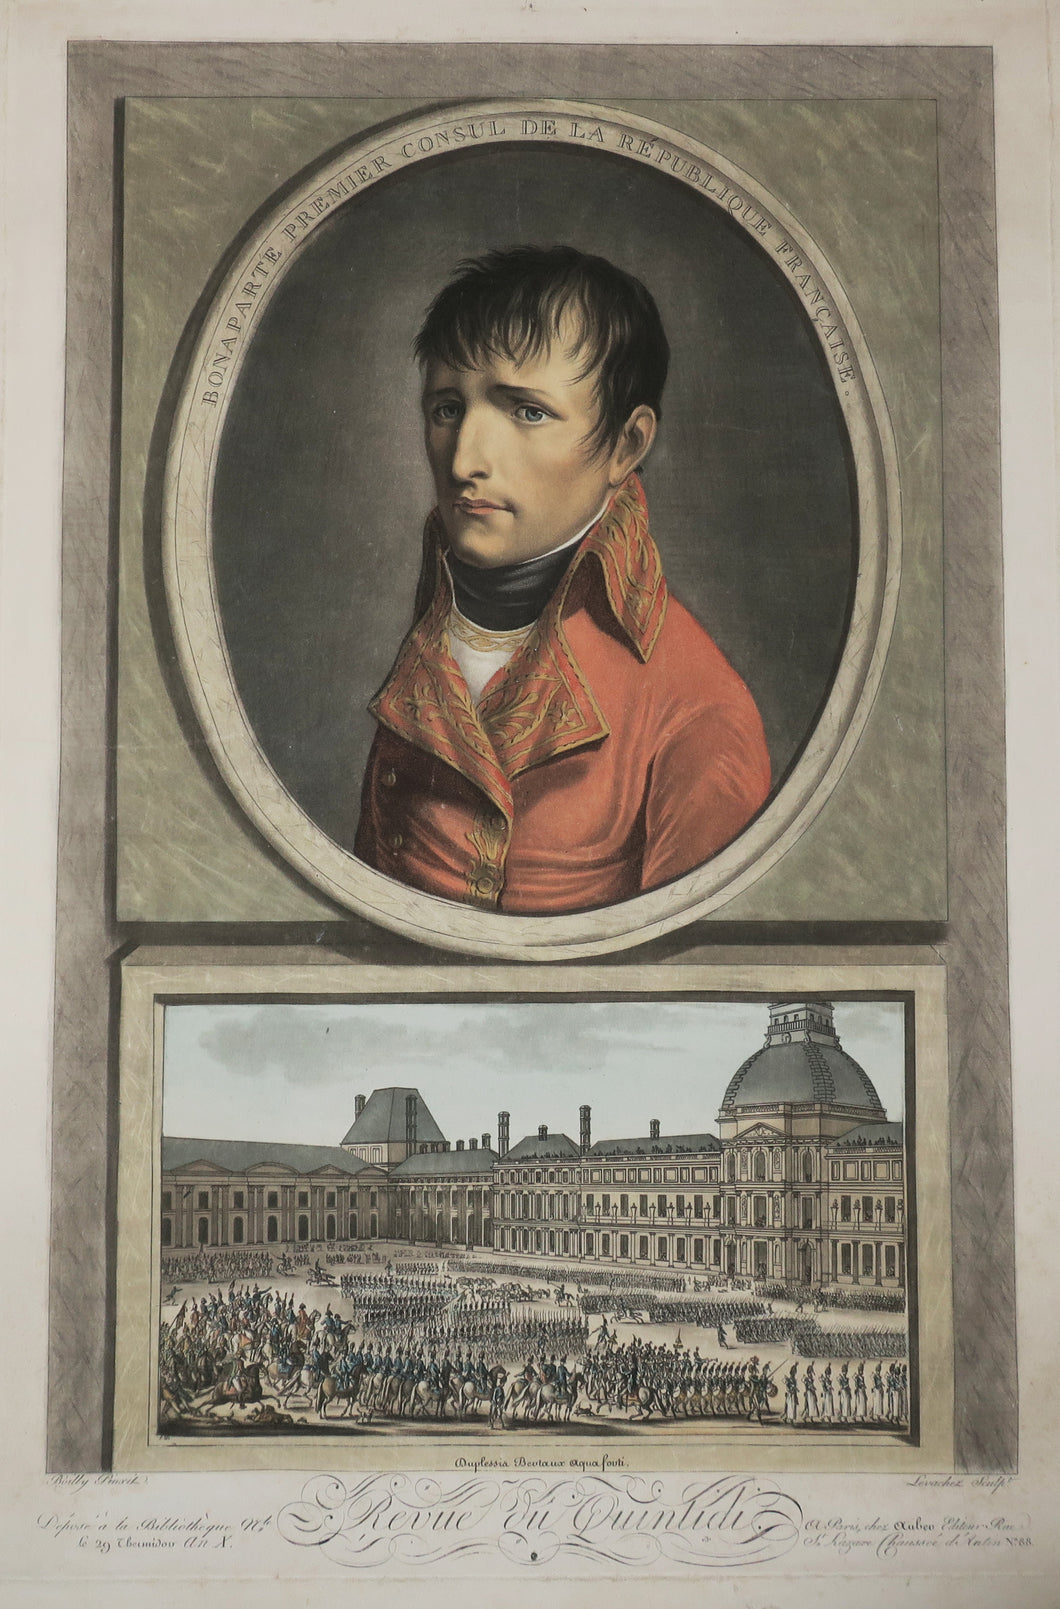 Bonaparte Premier Consul de la République Française. Revue du Quintidi. 1802.